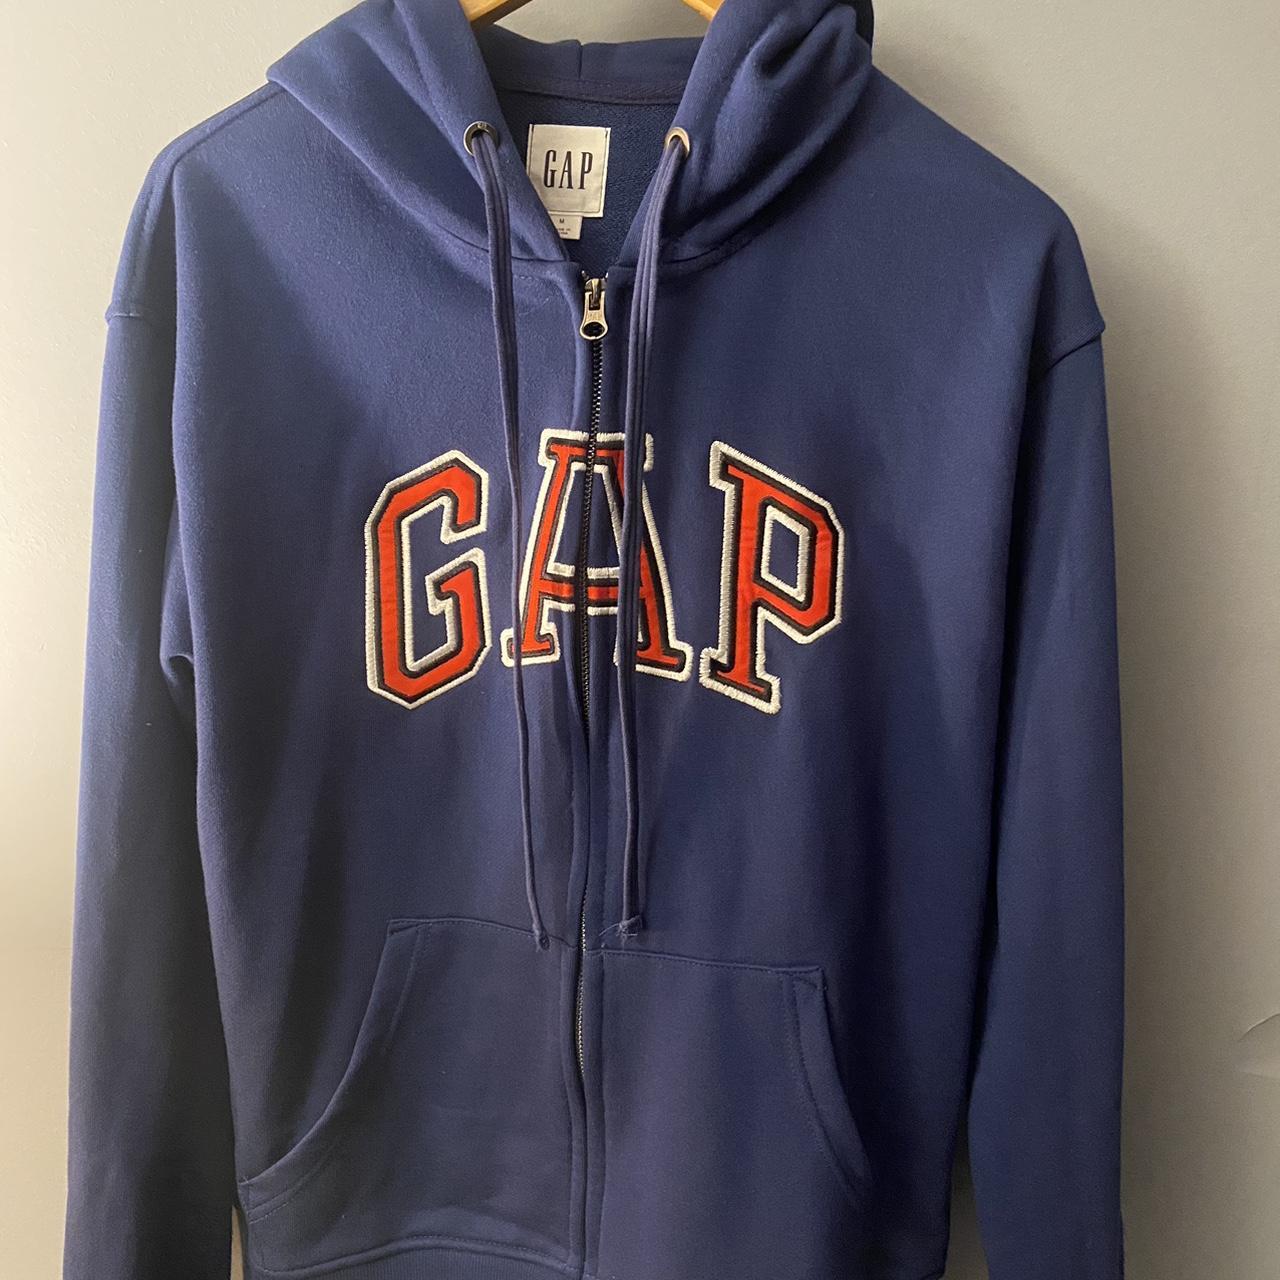 Gap Men's Blue Hoodie | Depop